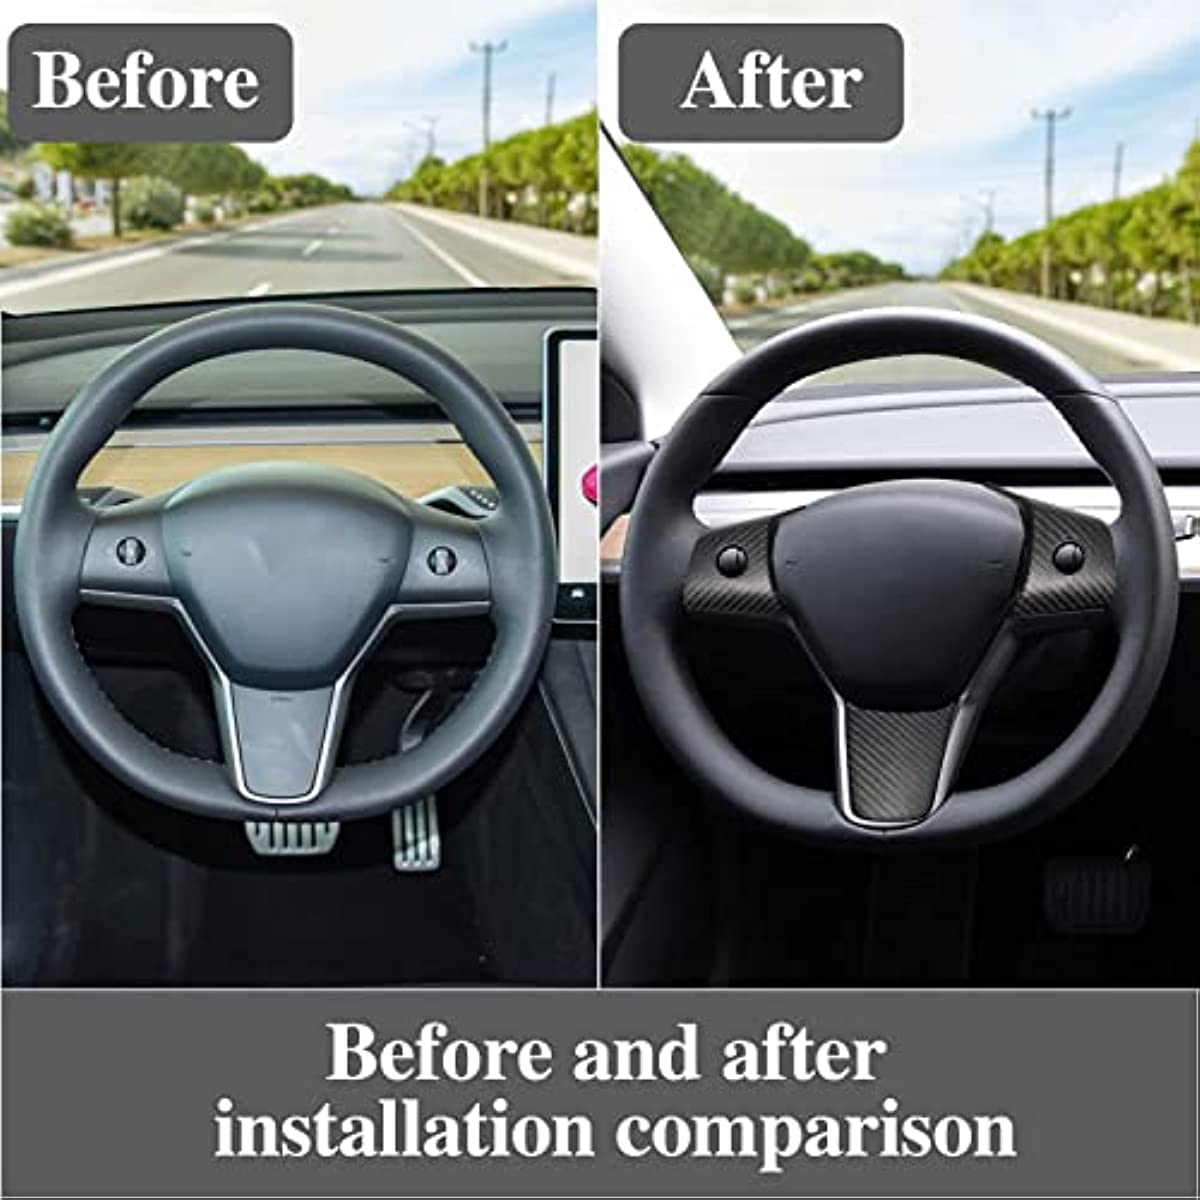 Carbon Fiber Steering Wheel Cover for Tesla Model 3 / Y - acetesla